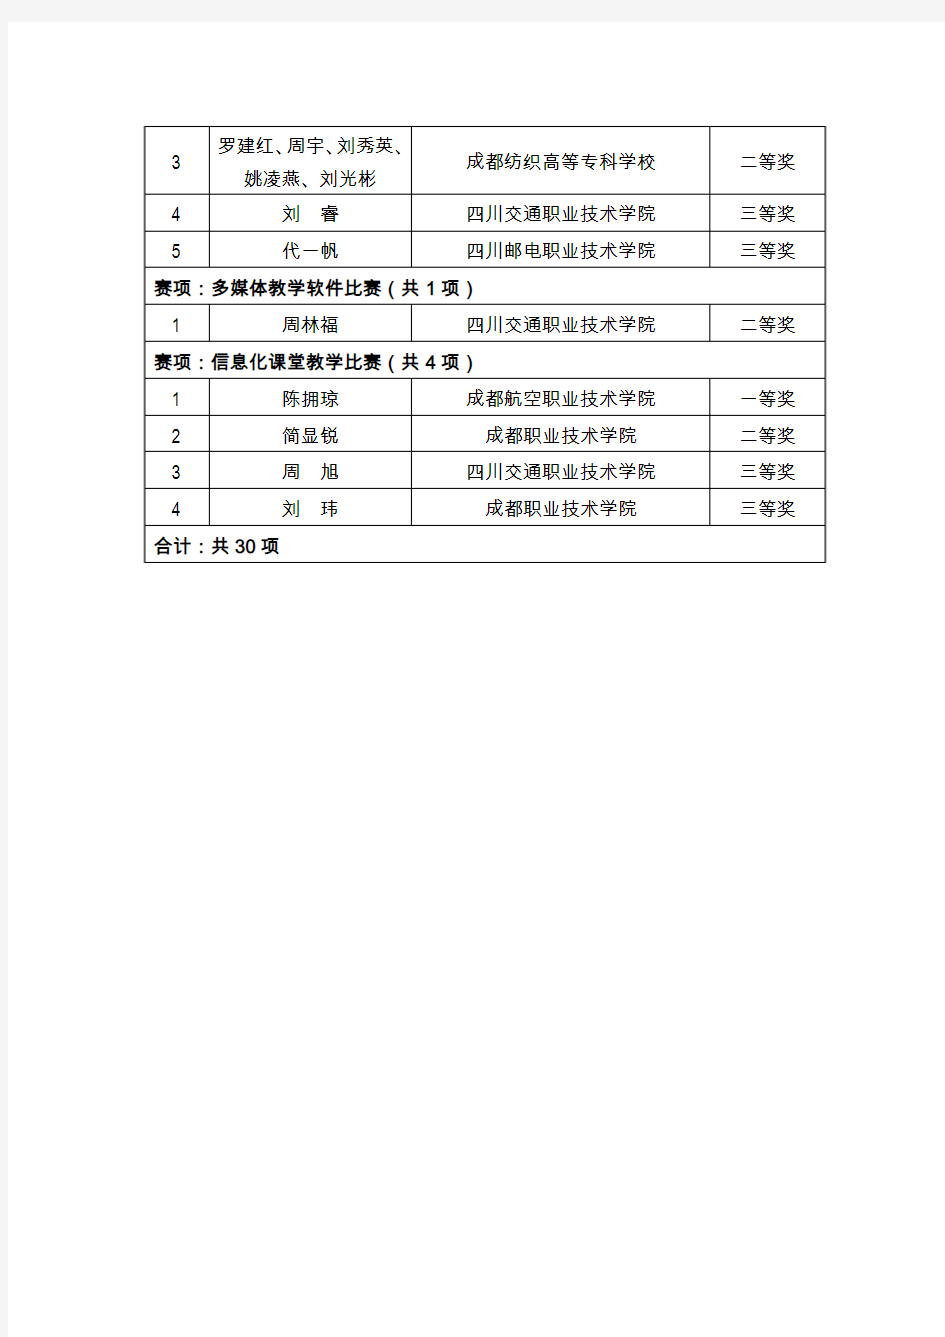 2014年四川省高等职业院校信息化教学大赛获奖名单